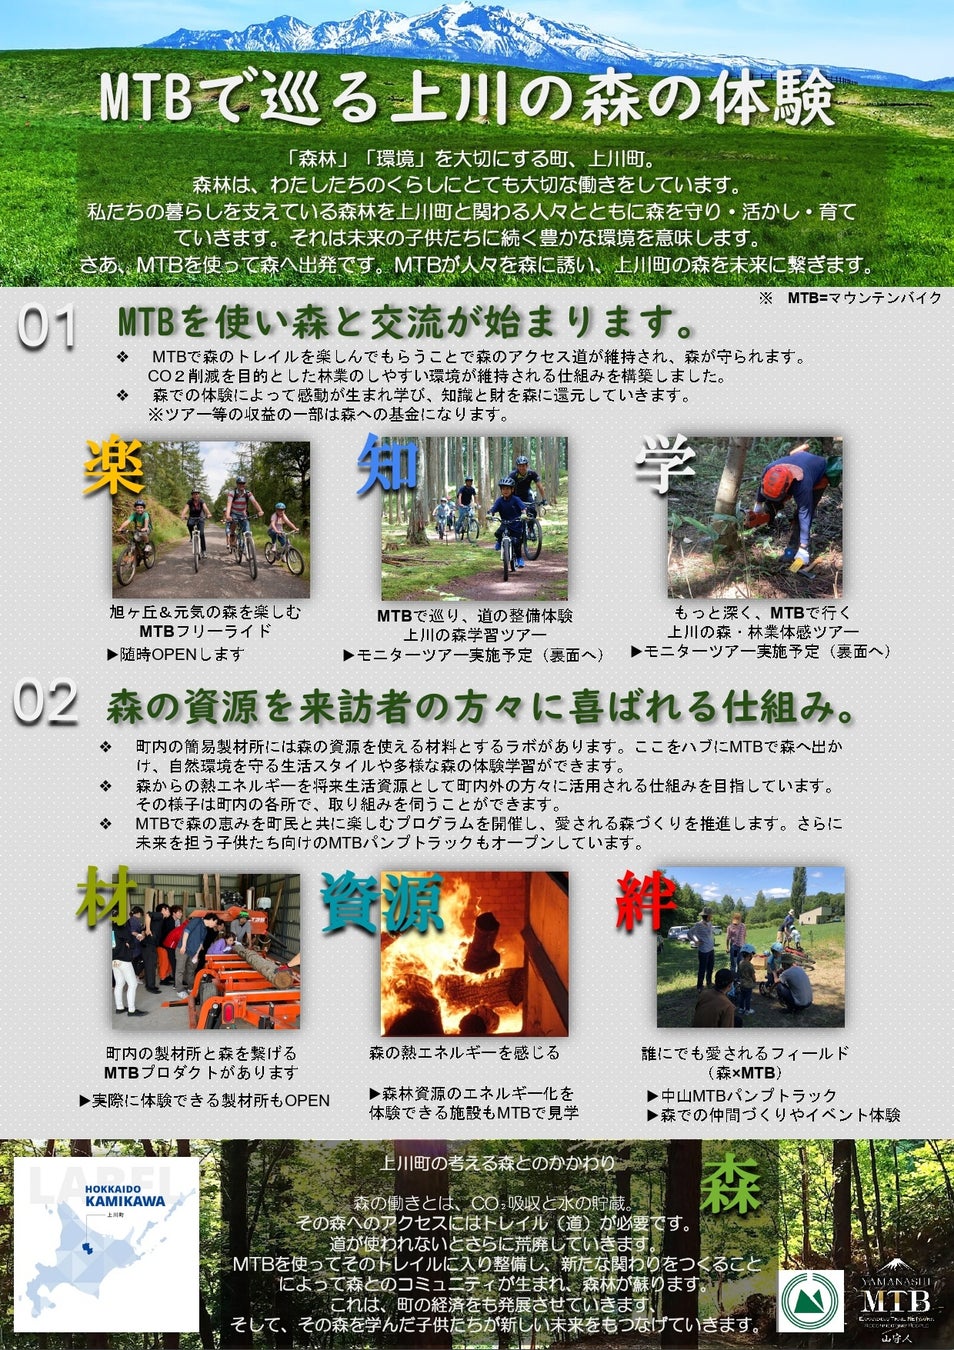 「北海道上川町」と「MTB⼭守⼈」が包括連携協定を結び、共に新たな取り組みをスタートしました！上川町は豊かな森林資源を活かし、持続可能な街づくりに向けた一石を投じます。のサブ画像1